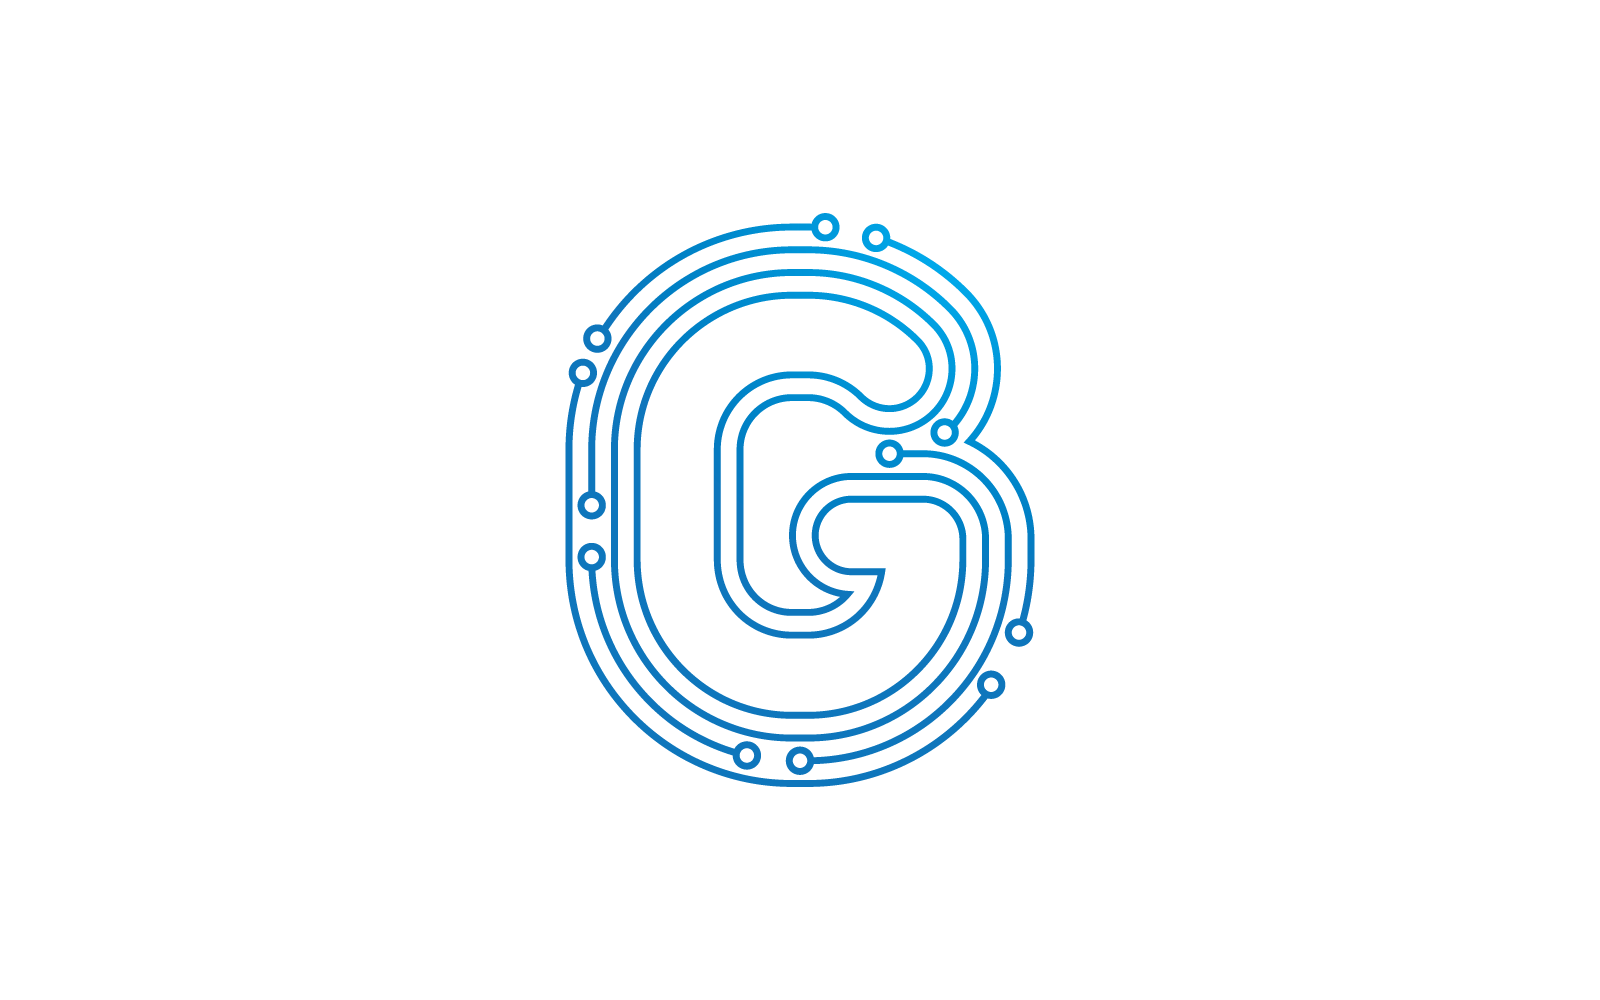 G початкової букви схеми технології ілюстрація логотип вектор шаблон